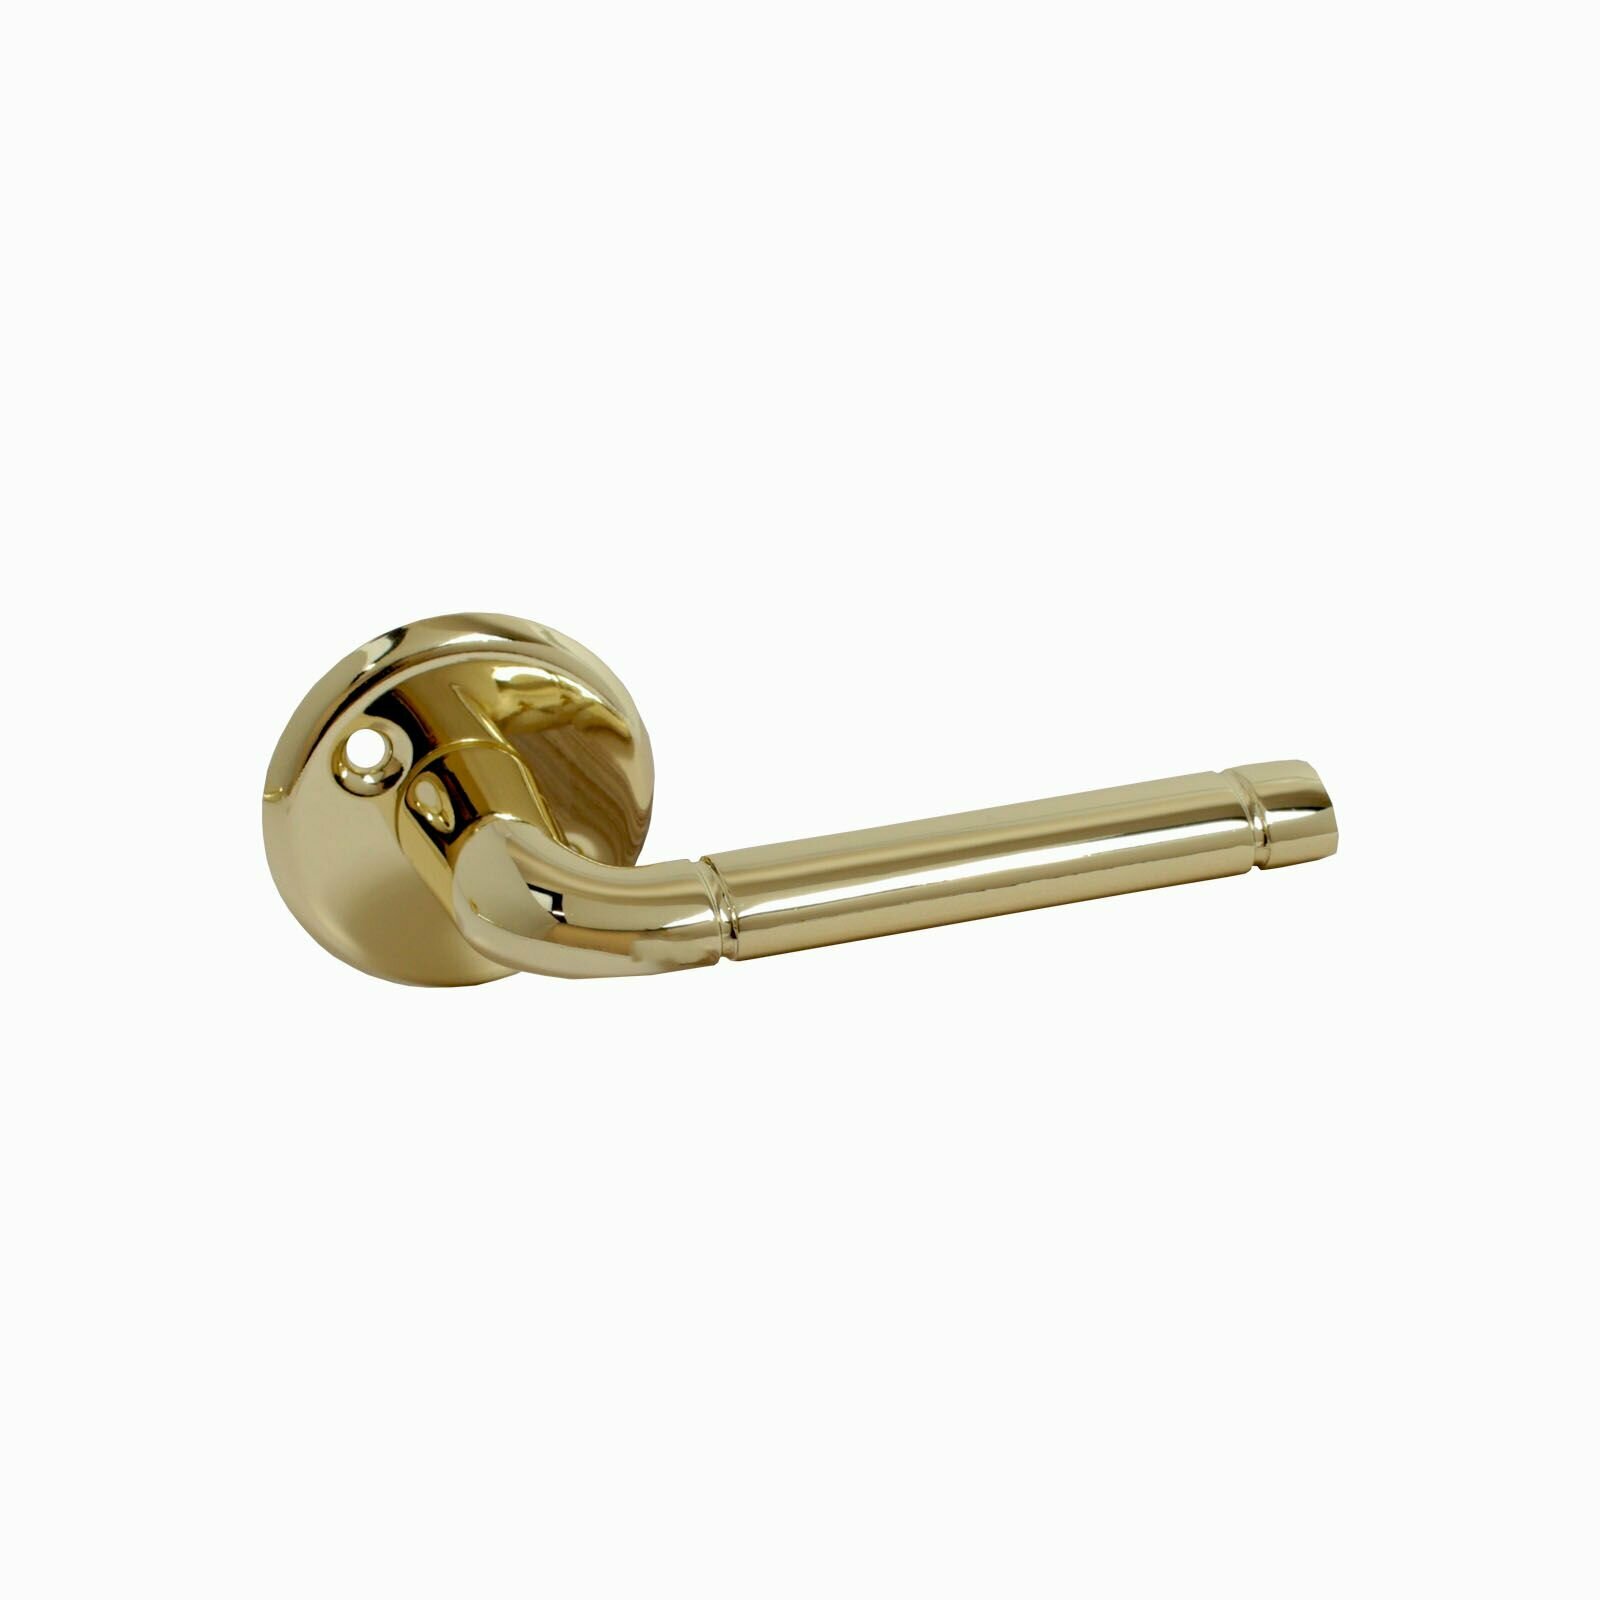 Комплект ручек для финских дверей аллюр 16/028 PB цвет золото